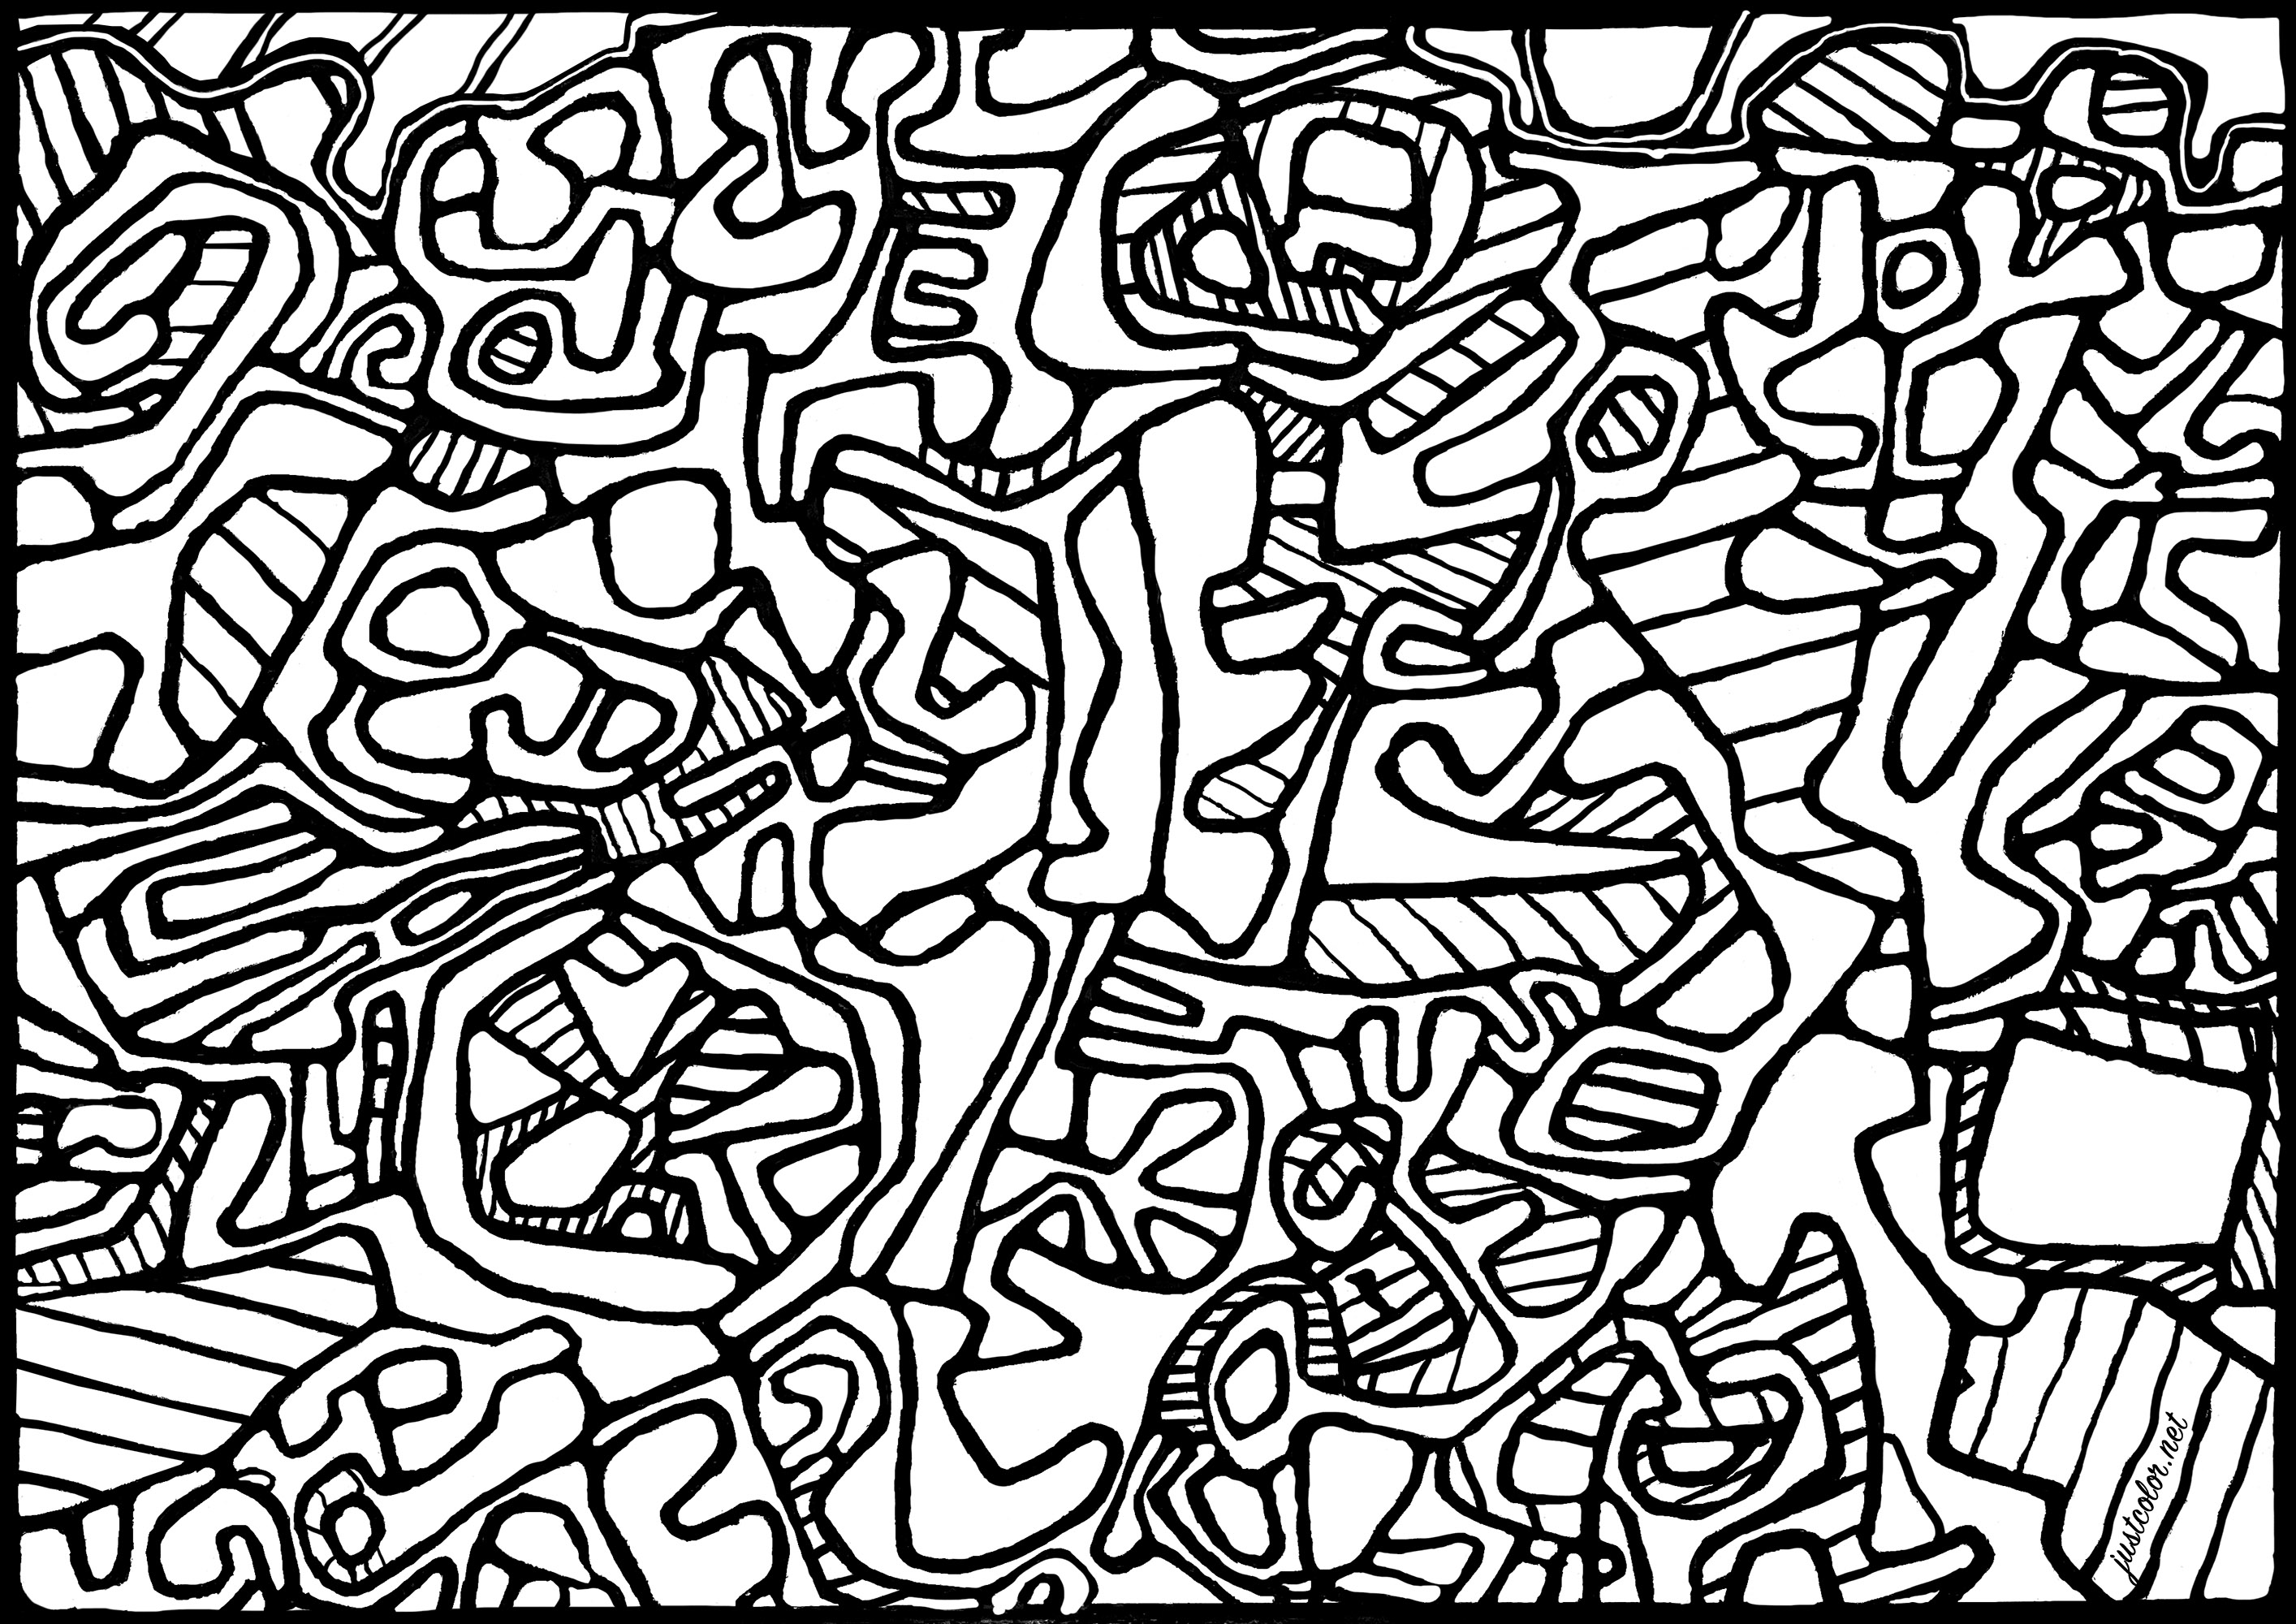 Coloreado basado en el cuadro 'Jardin L'Hourloupe' de Jean Dubuffet (1966). Jean Dubuffet comenzó su carrera pintando paisajes y retratos. Interesado por la expresión libre e instintiva del artista sin formación, fundó el movimiento Art Brut y creó muchas obras con esta estética, utilizando materiales como el hormigón y la tierra. También desarrolló el concepto de 'Hourloupe', un universo fantástico poblado por personajes extraños y grotescos. Dubuffet fue también un apasionado coleccionista de art brut, y creó una importante colección que se ha expuesto en todo el mundo.